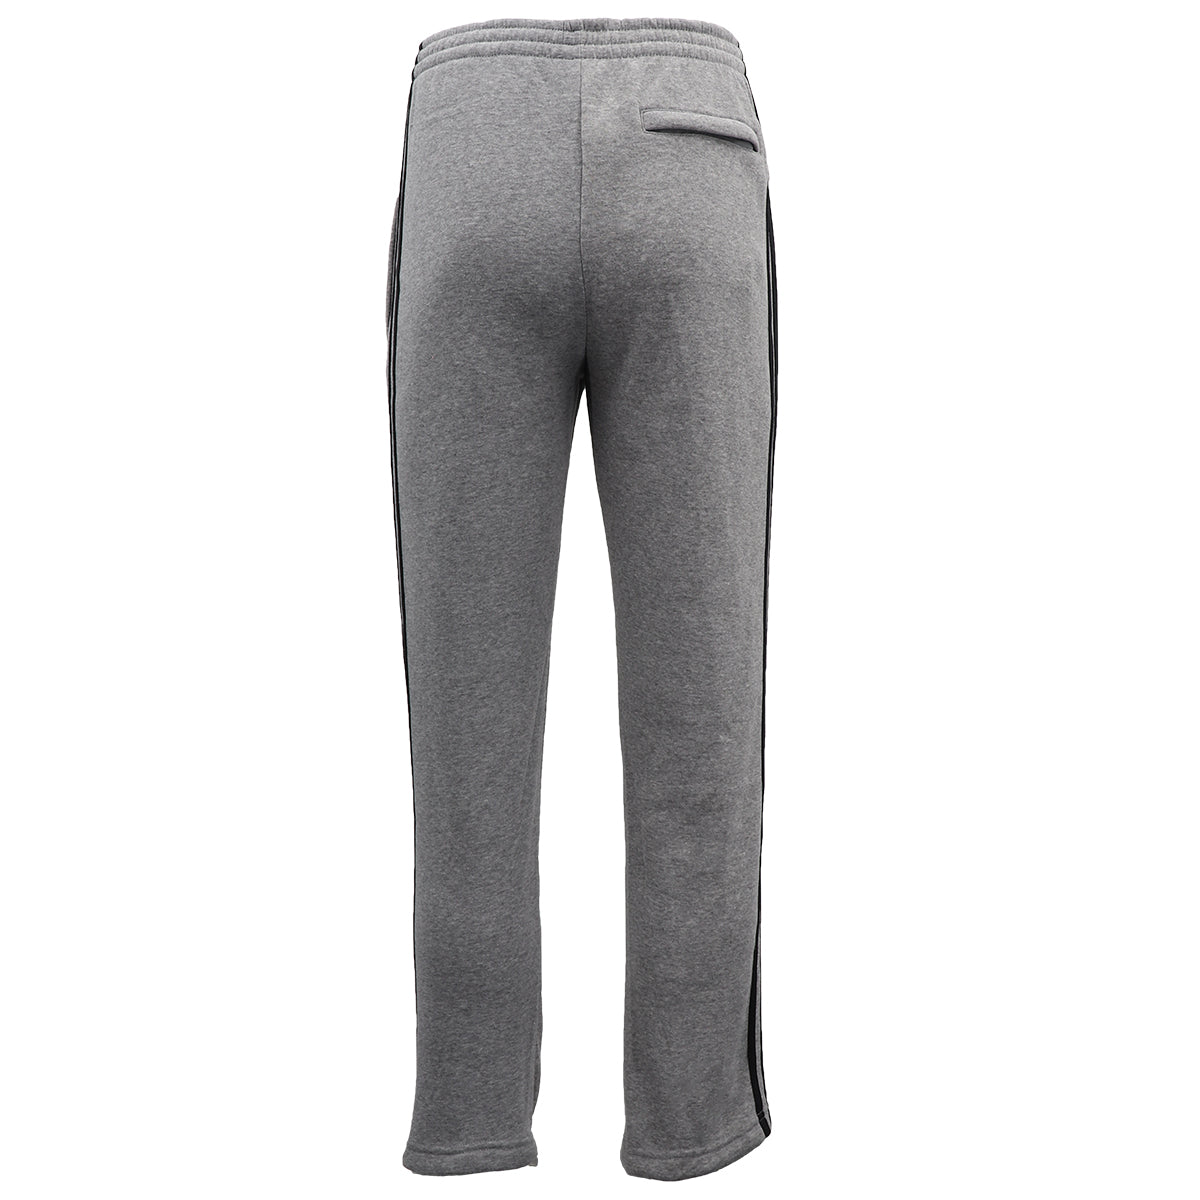 Men's Fleece Casual Sports Track Pants w Zip Pocket Striped Sweat Trousers S-6XL, Black, XL